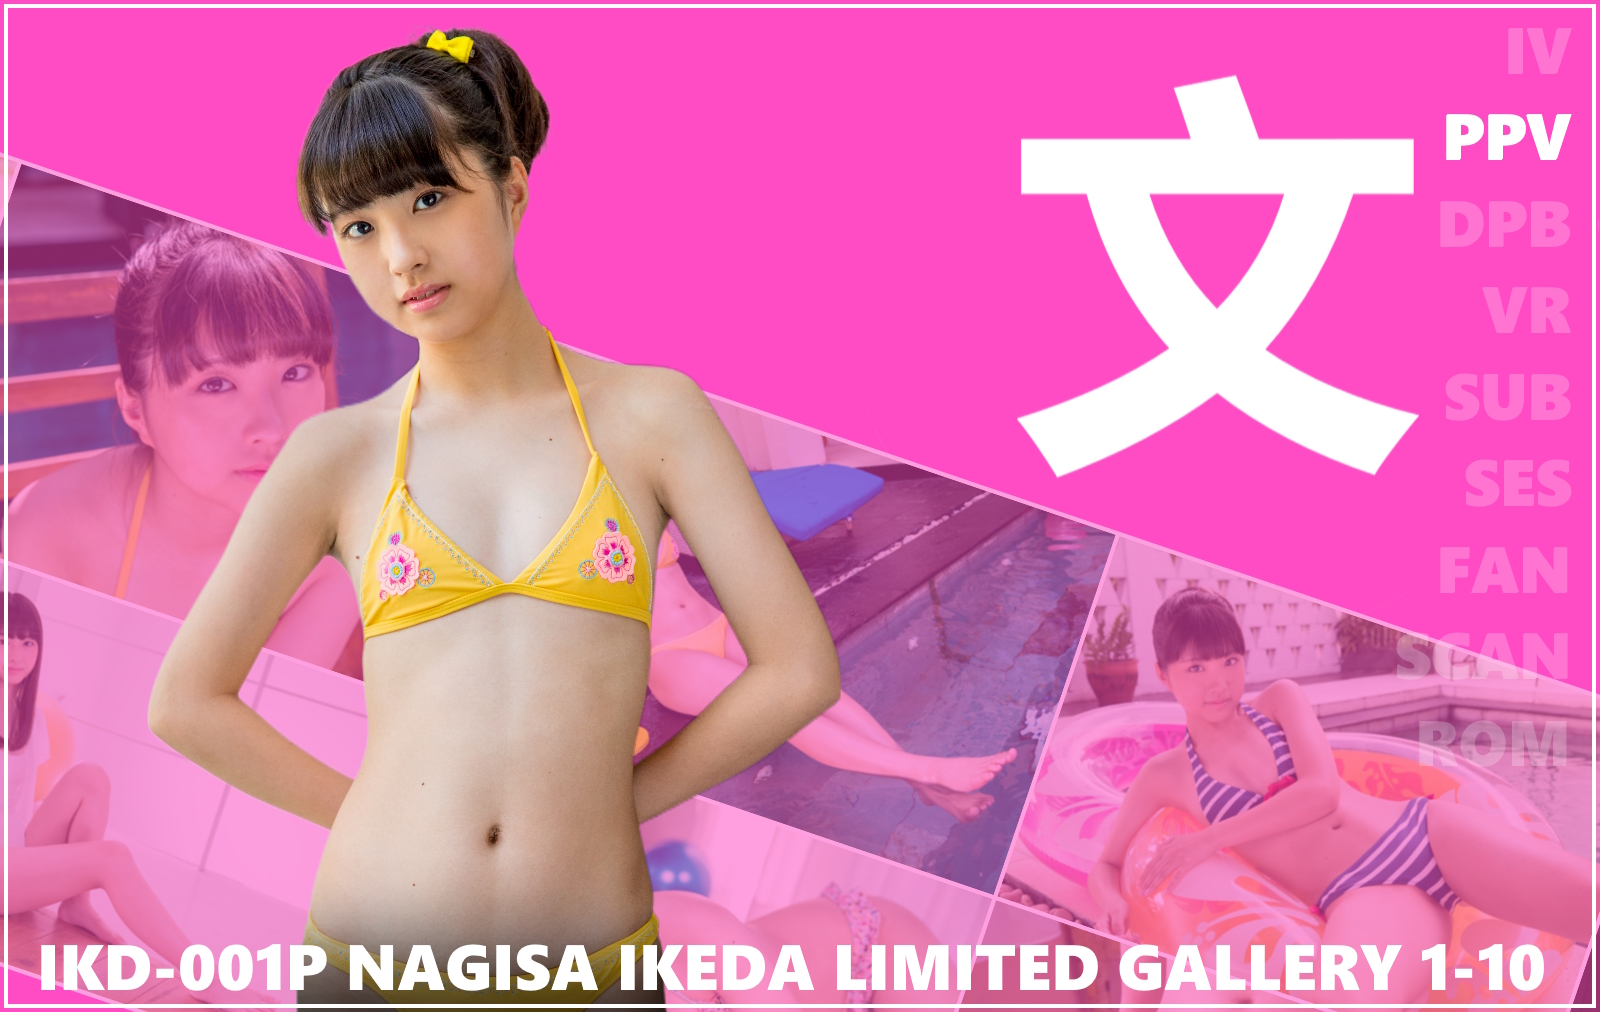 IKD-001P Nagisa Ikeda 4K Limited Gallery 1-10